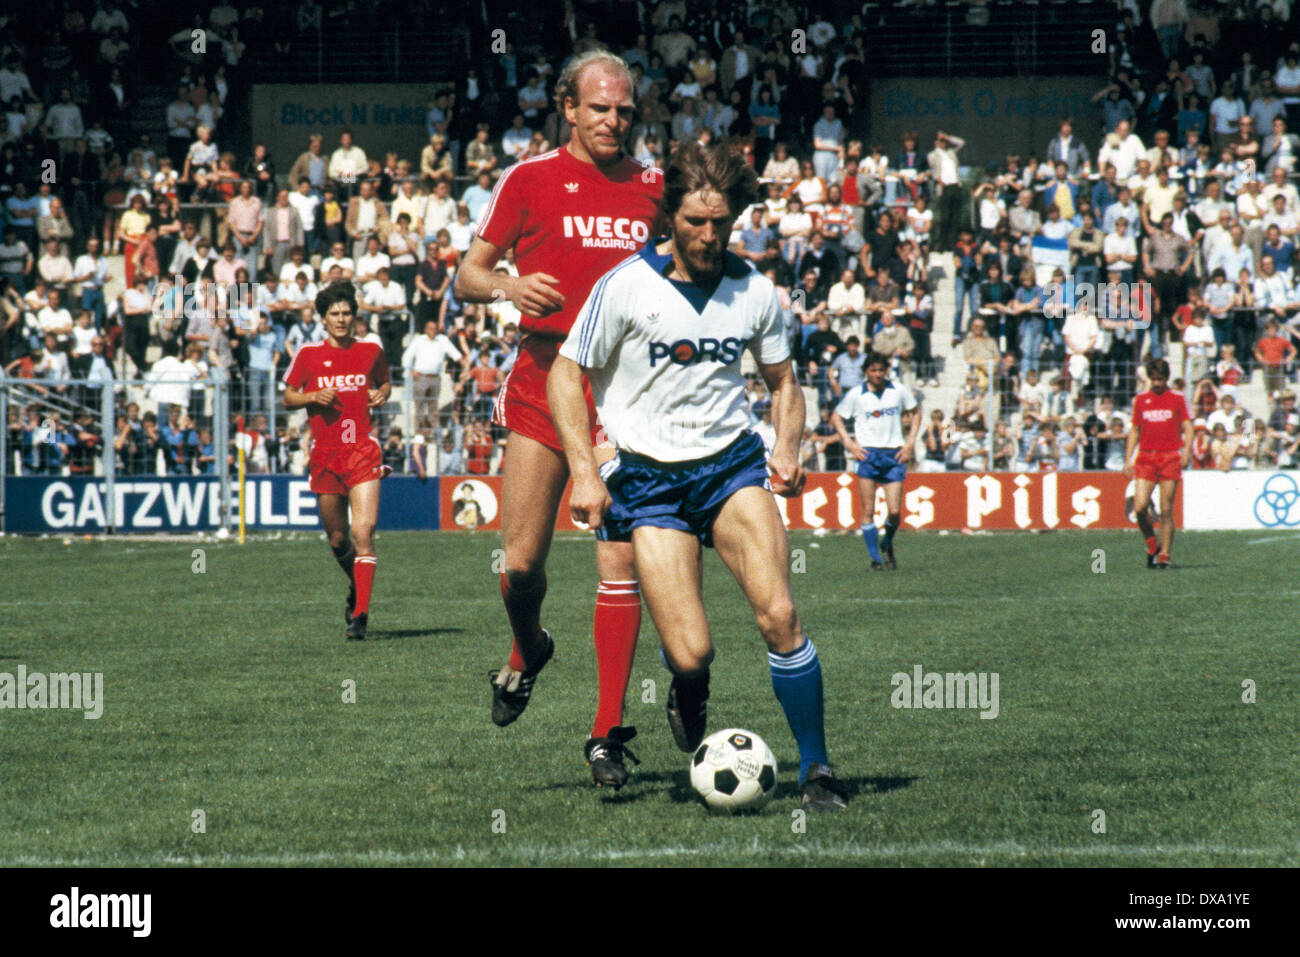 Calcio, Bundesliga, 1981/1982, Ruhr Stadio, VfL Bochum contro FC Bayern Monaco 3:1, scena del match, Lothar Woelk (VFL) in possesso palla, dietro Dieter Hoeness (FCB) Foto Stock